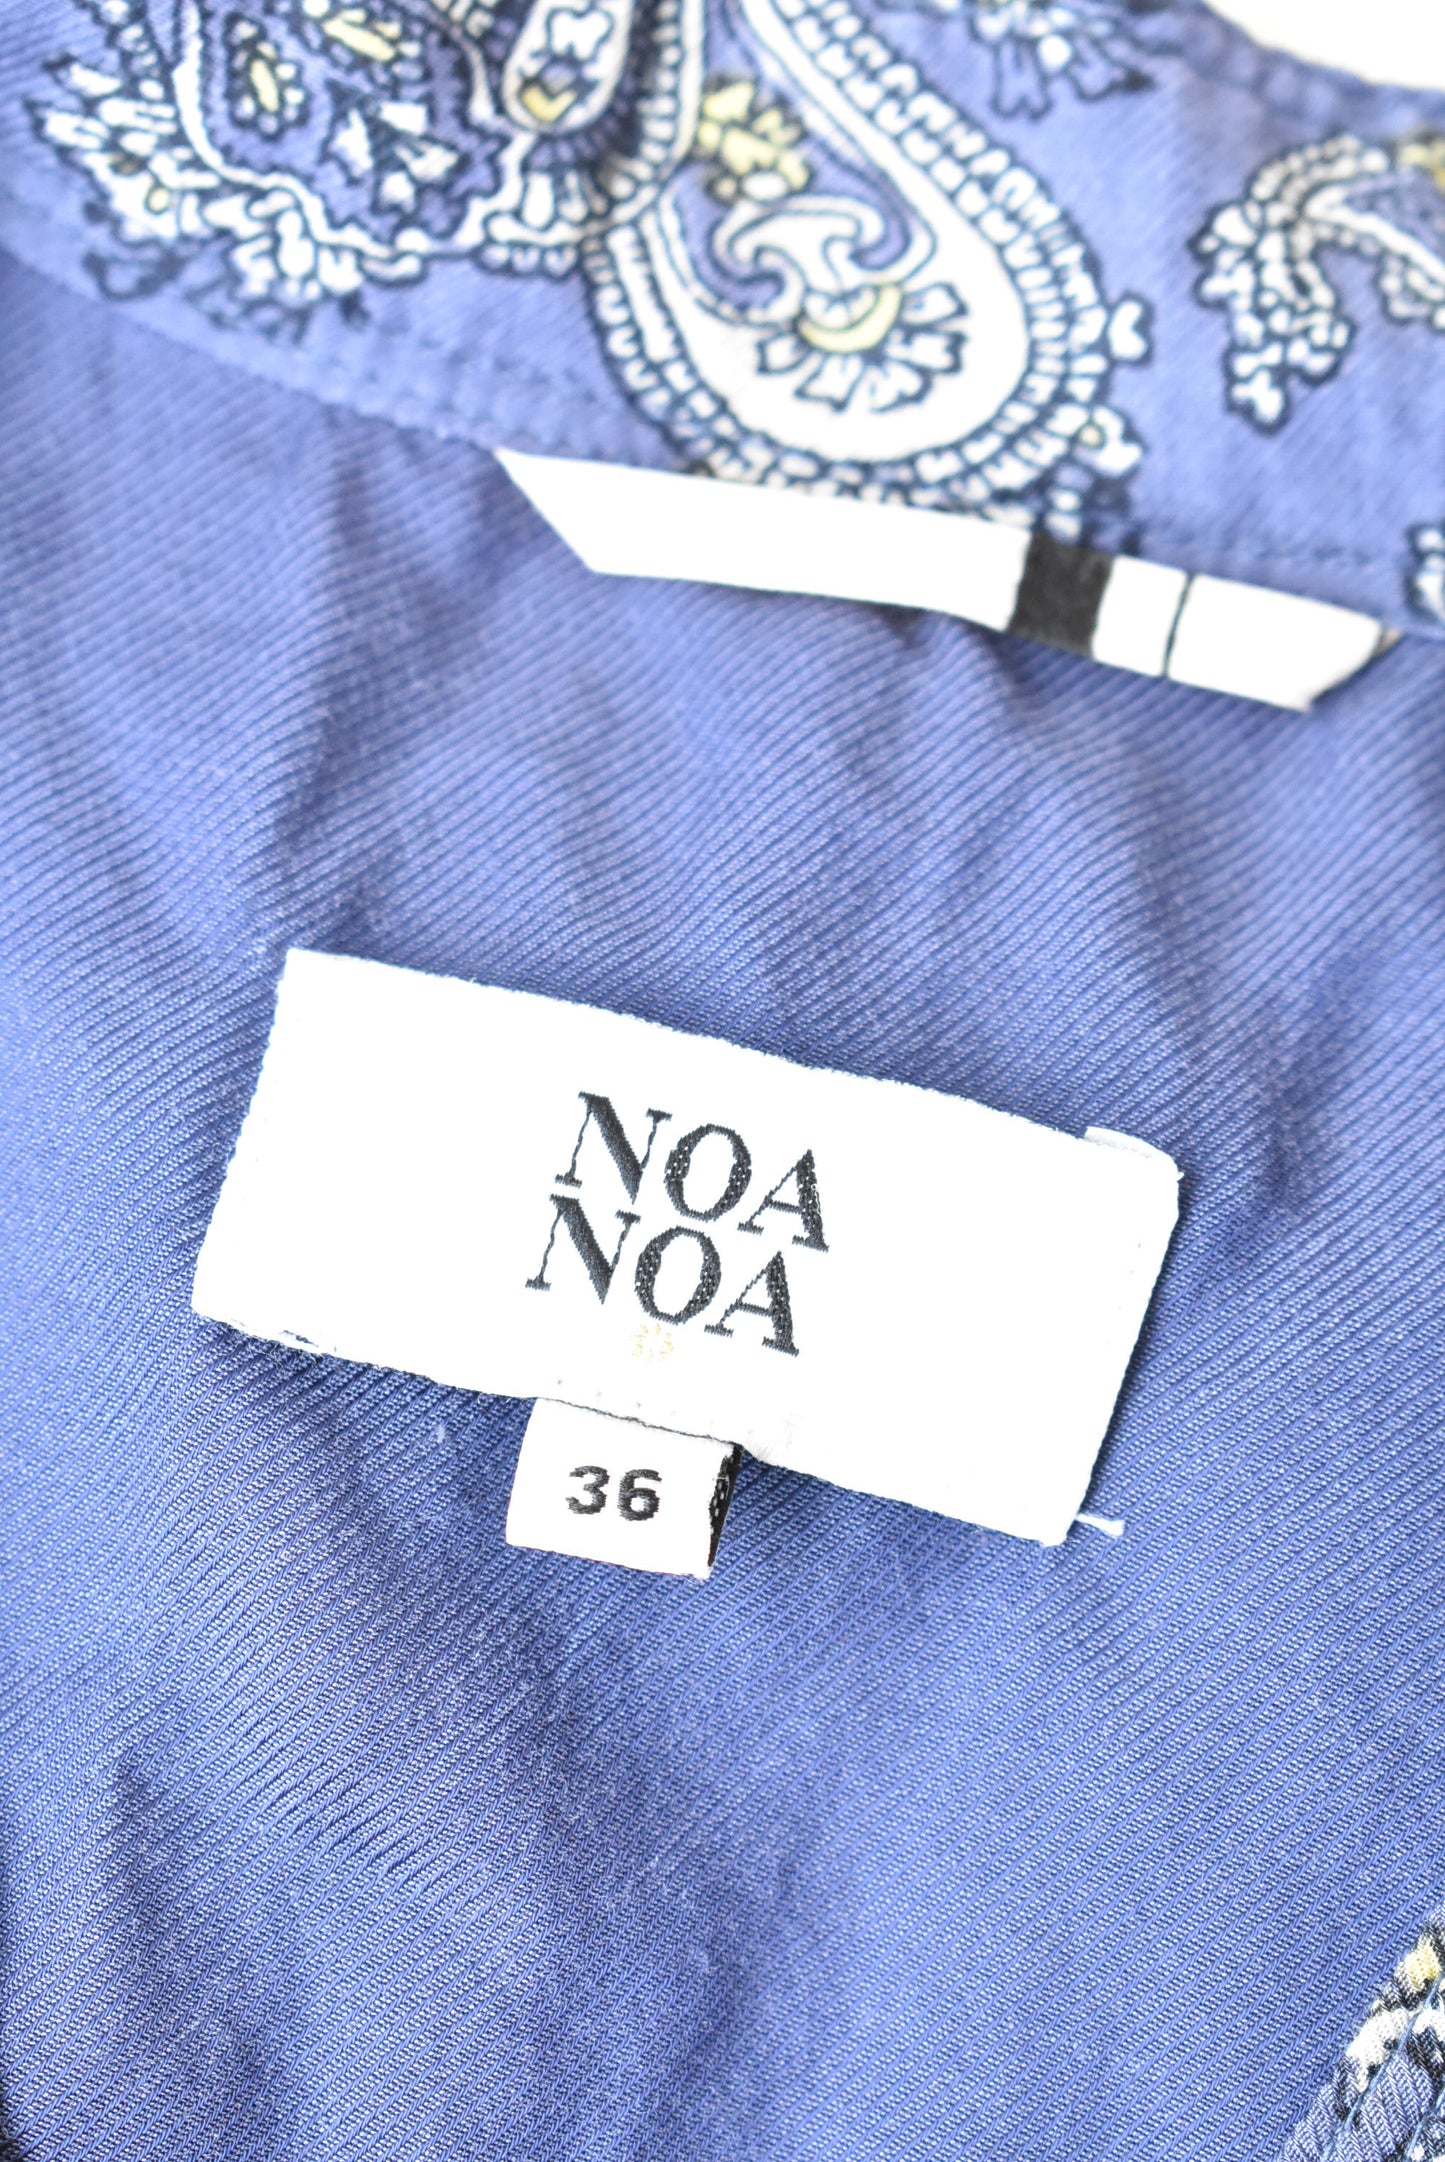 Noa Noa blue paisley top, size 36